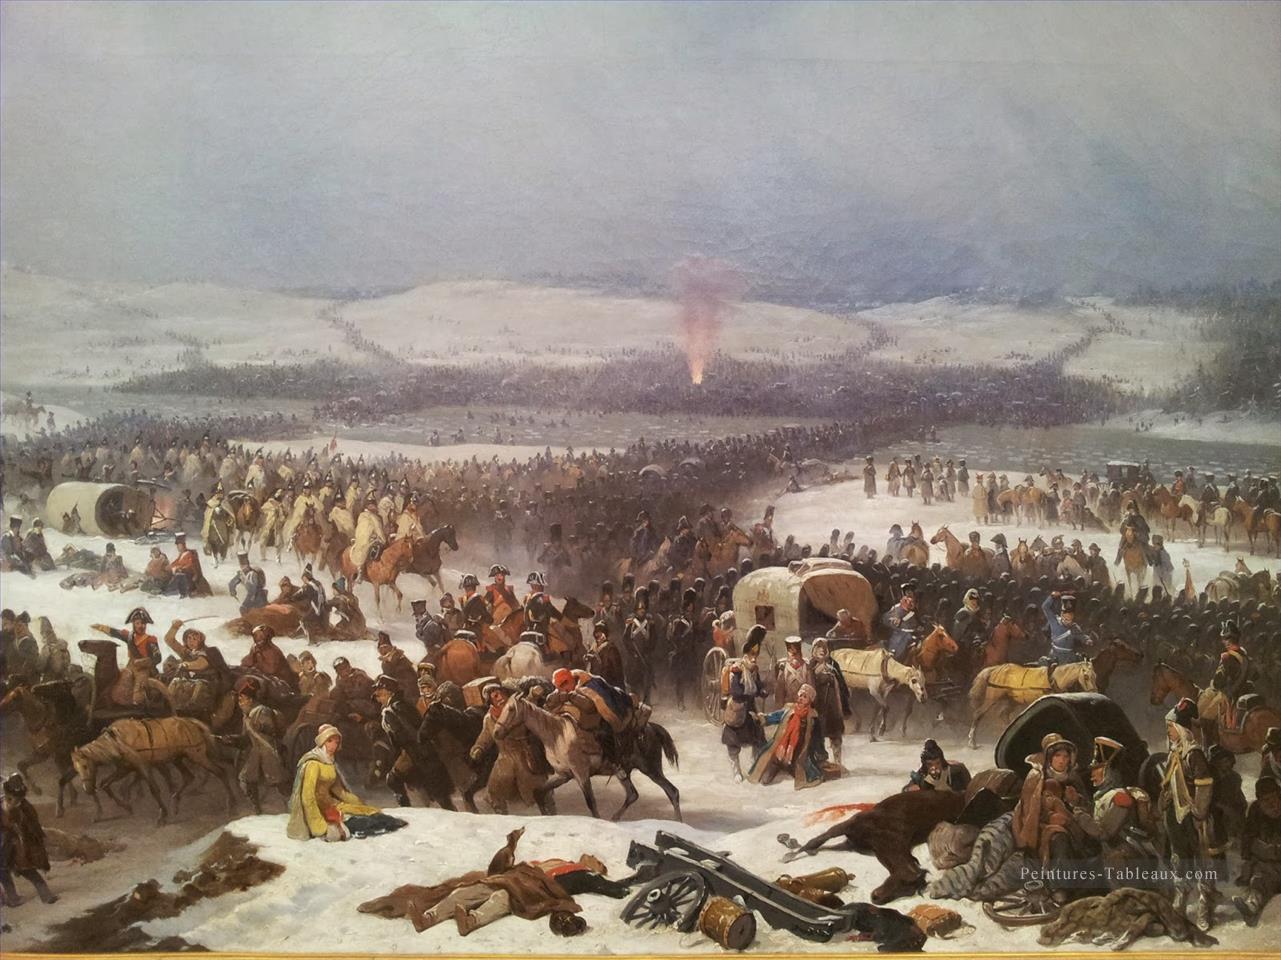 La grande armee traversant la Berezina en janvier Suchode guerre militaire. JPG Peintures à l'huile